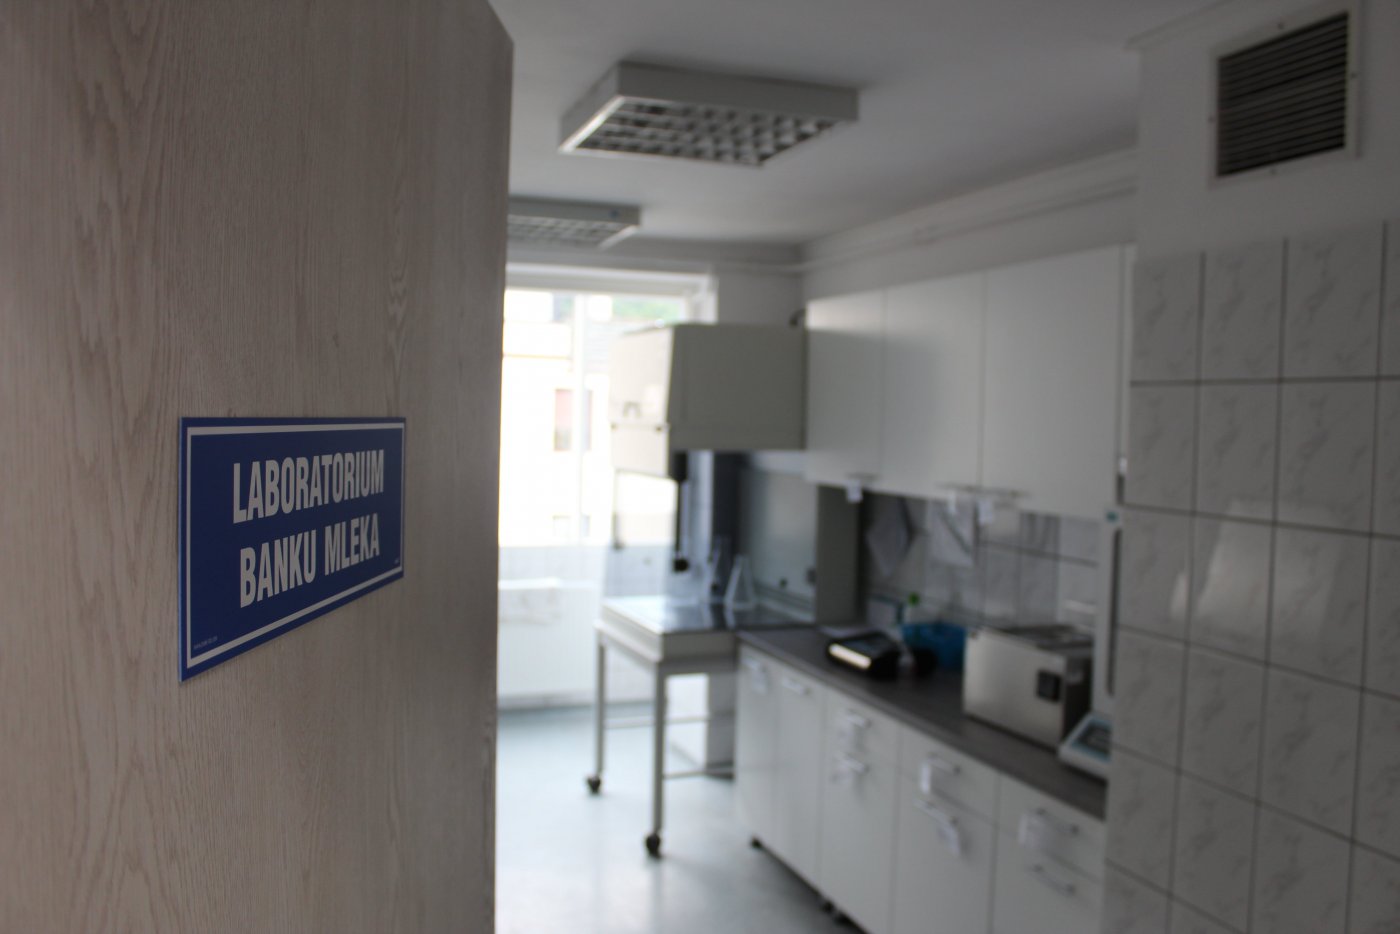 Pomieszczenie w Szpitalu Morskim im. PCK, w którym jest laboratorium Banku Mleka. Fot. z galerii GCZ